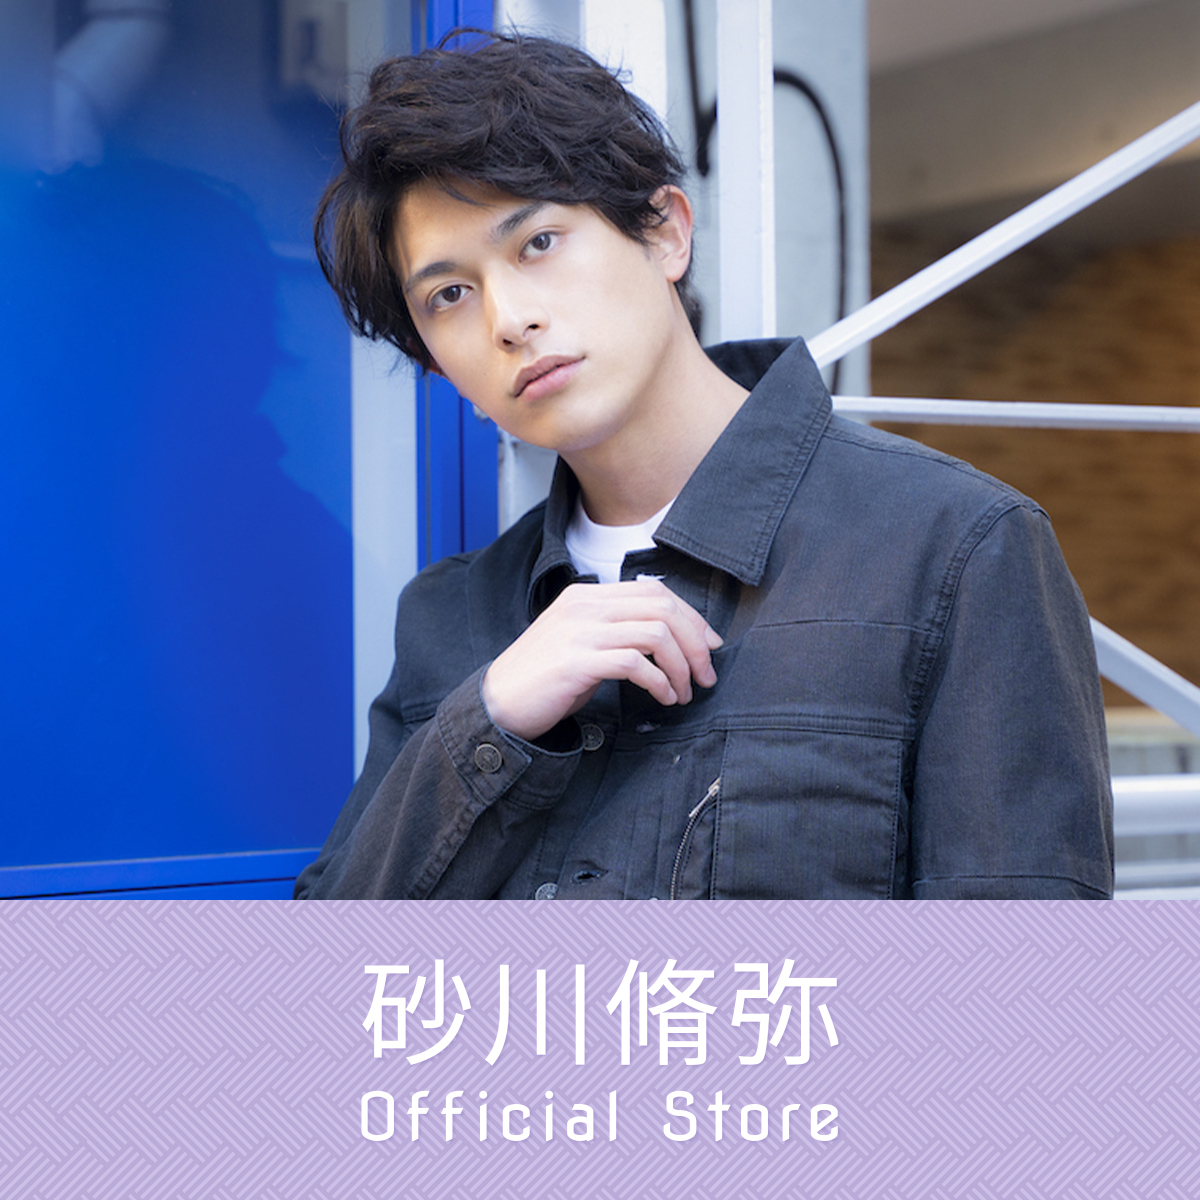 砂川脩弥 Official Store